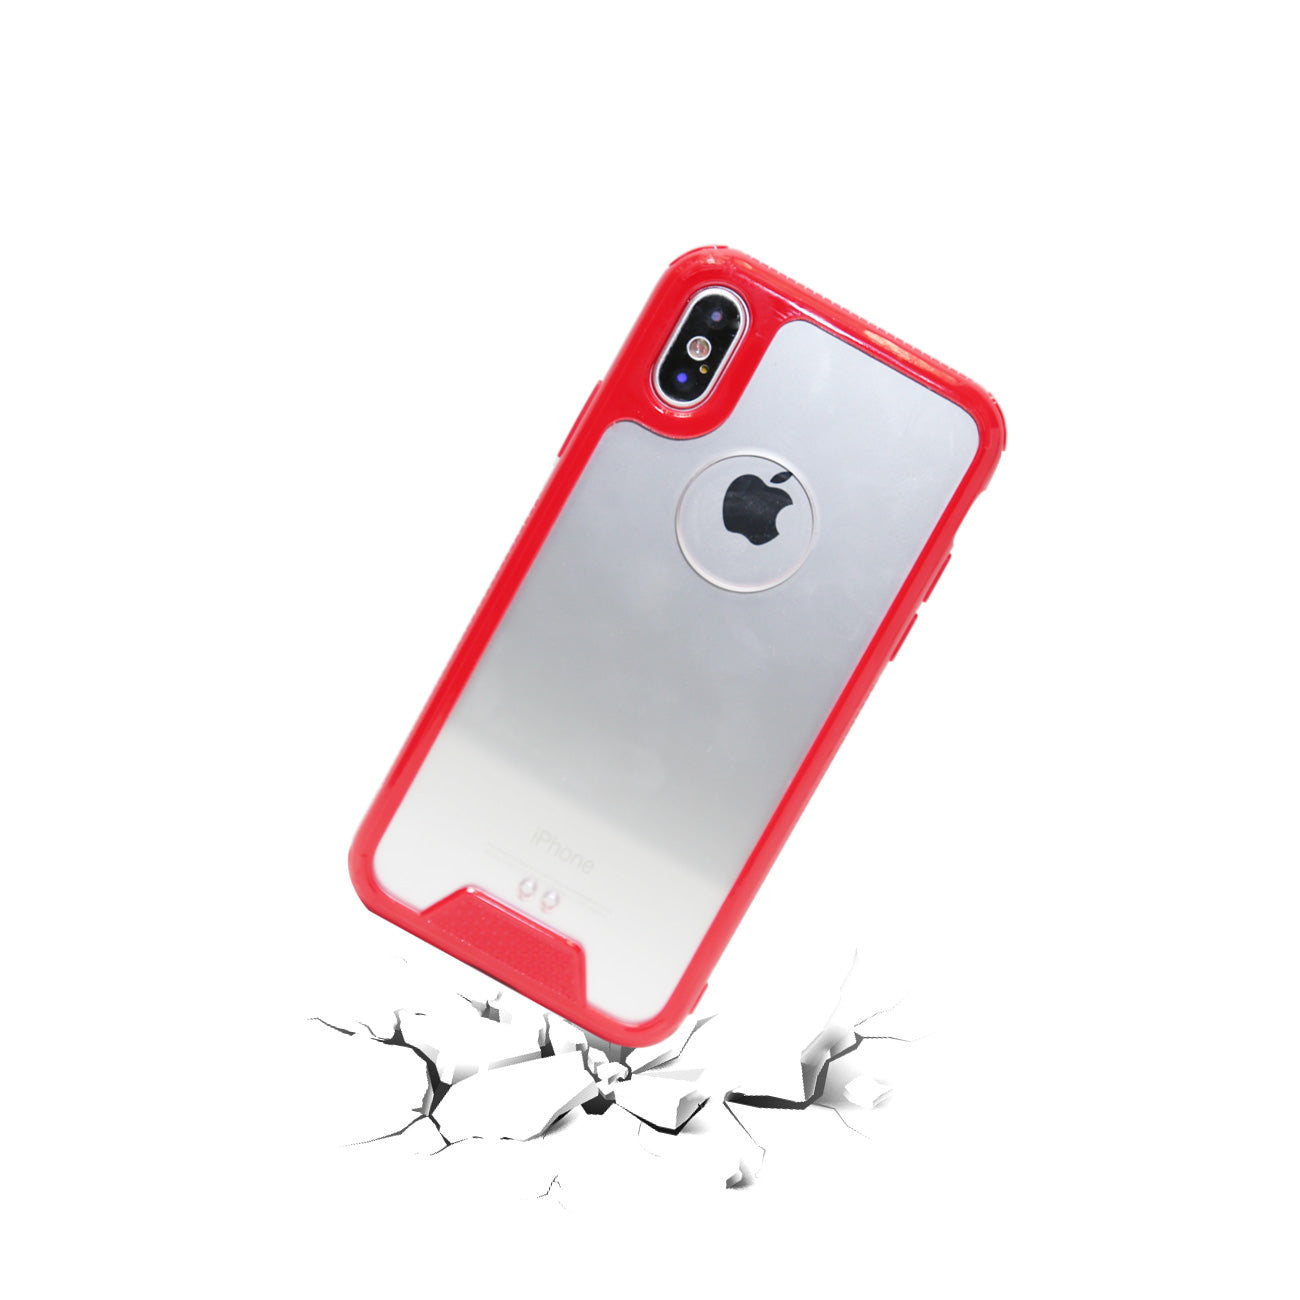 iPhone X Slim Bumper TPU Back Cover In Clear Red